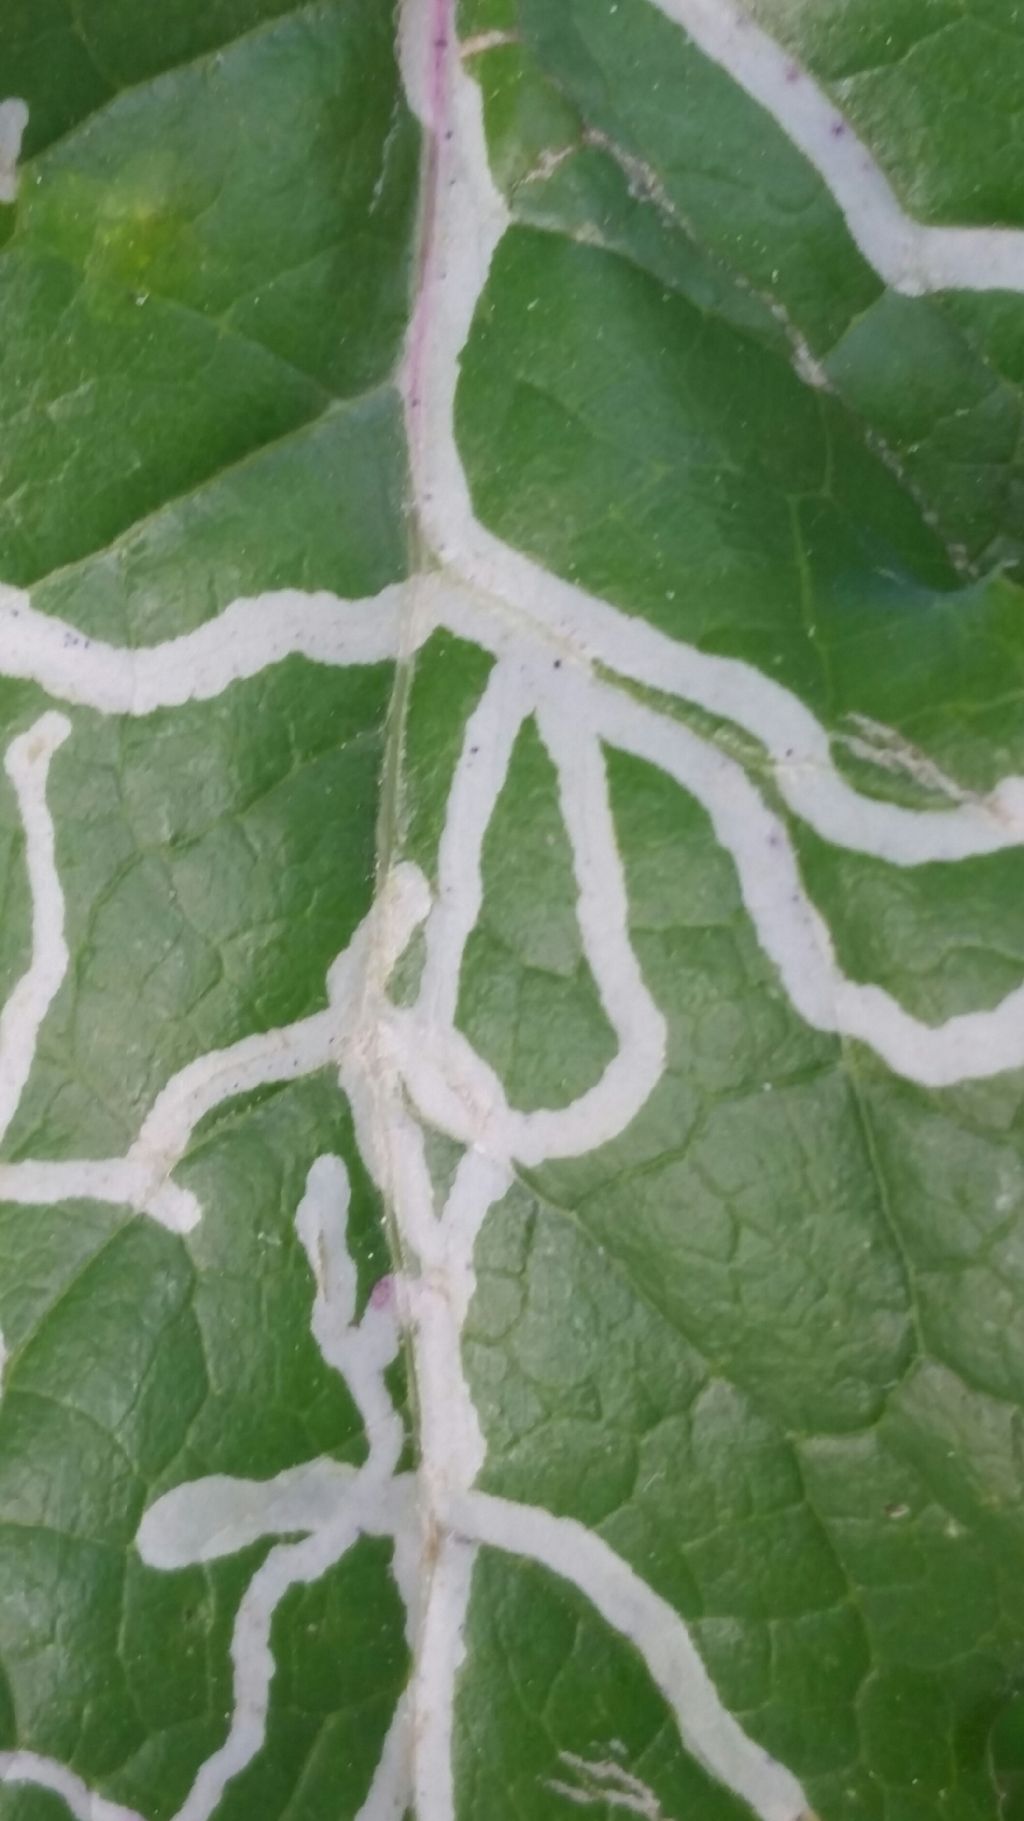 Striscie bianche su foglie: gallerie scavate da larve di Agromyzidae